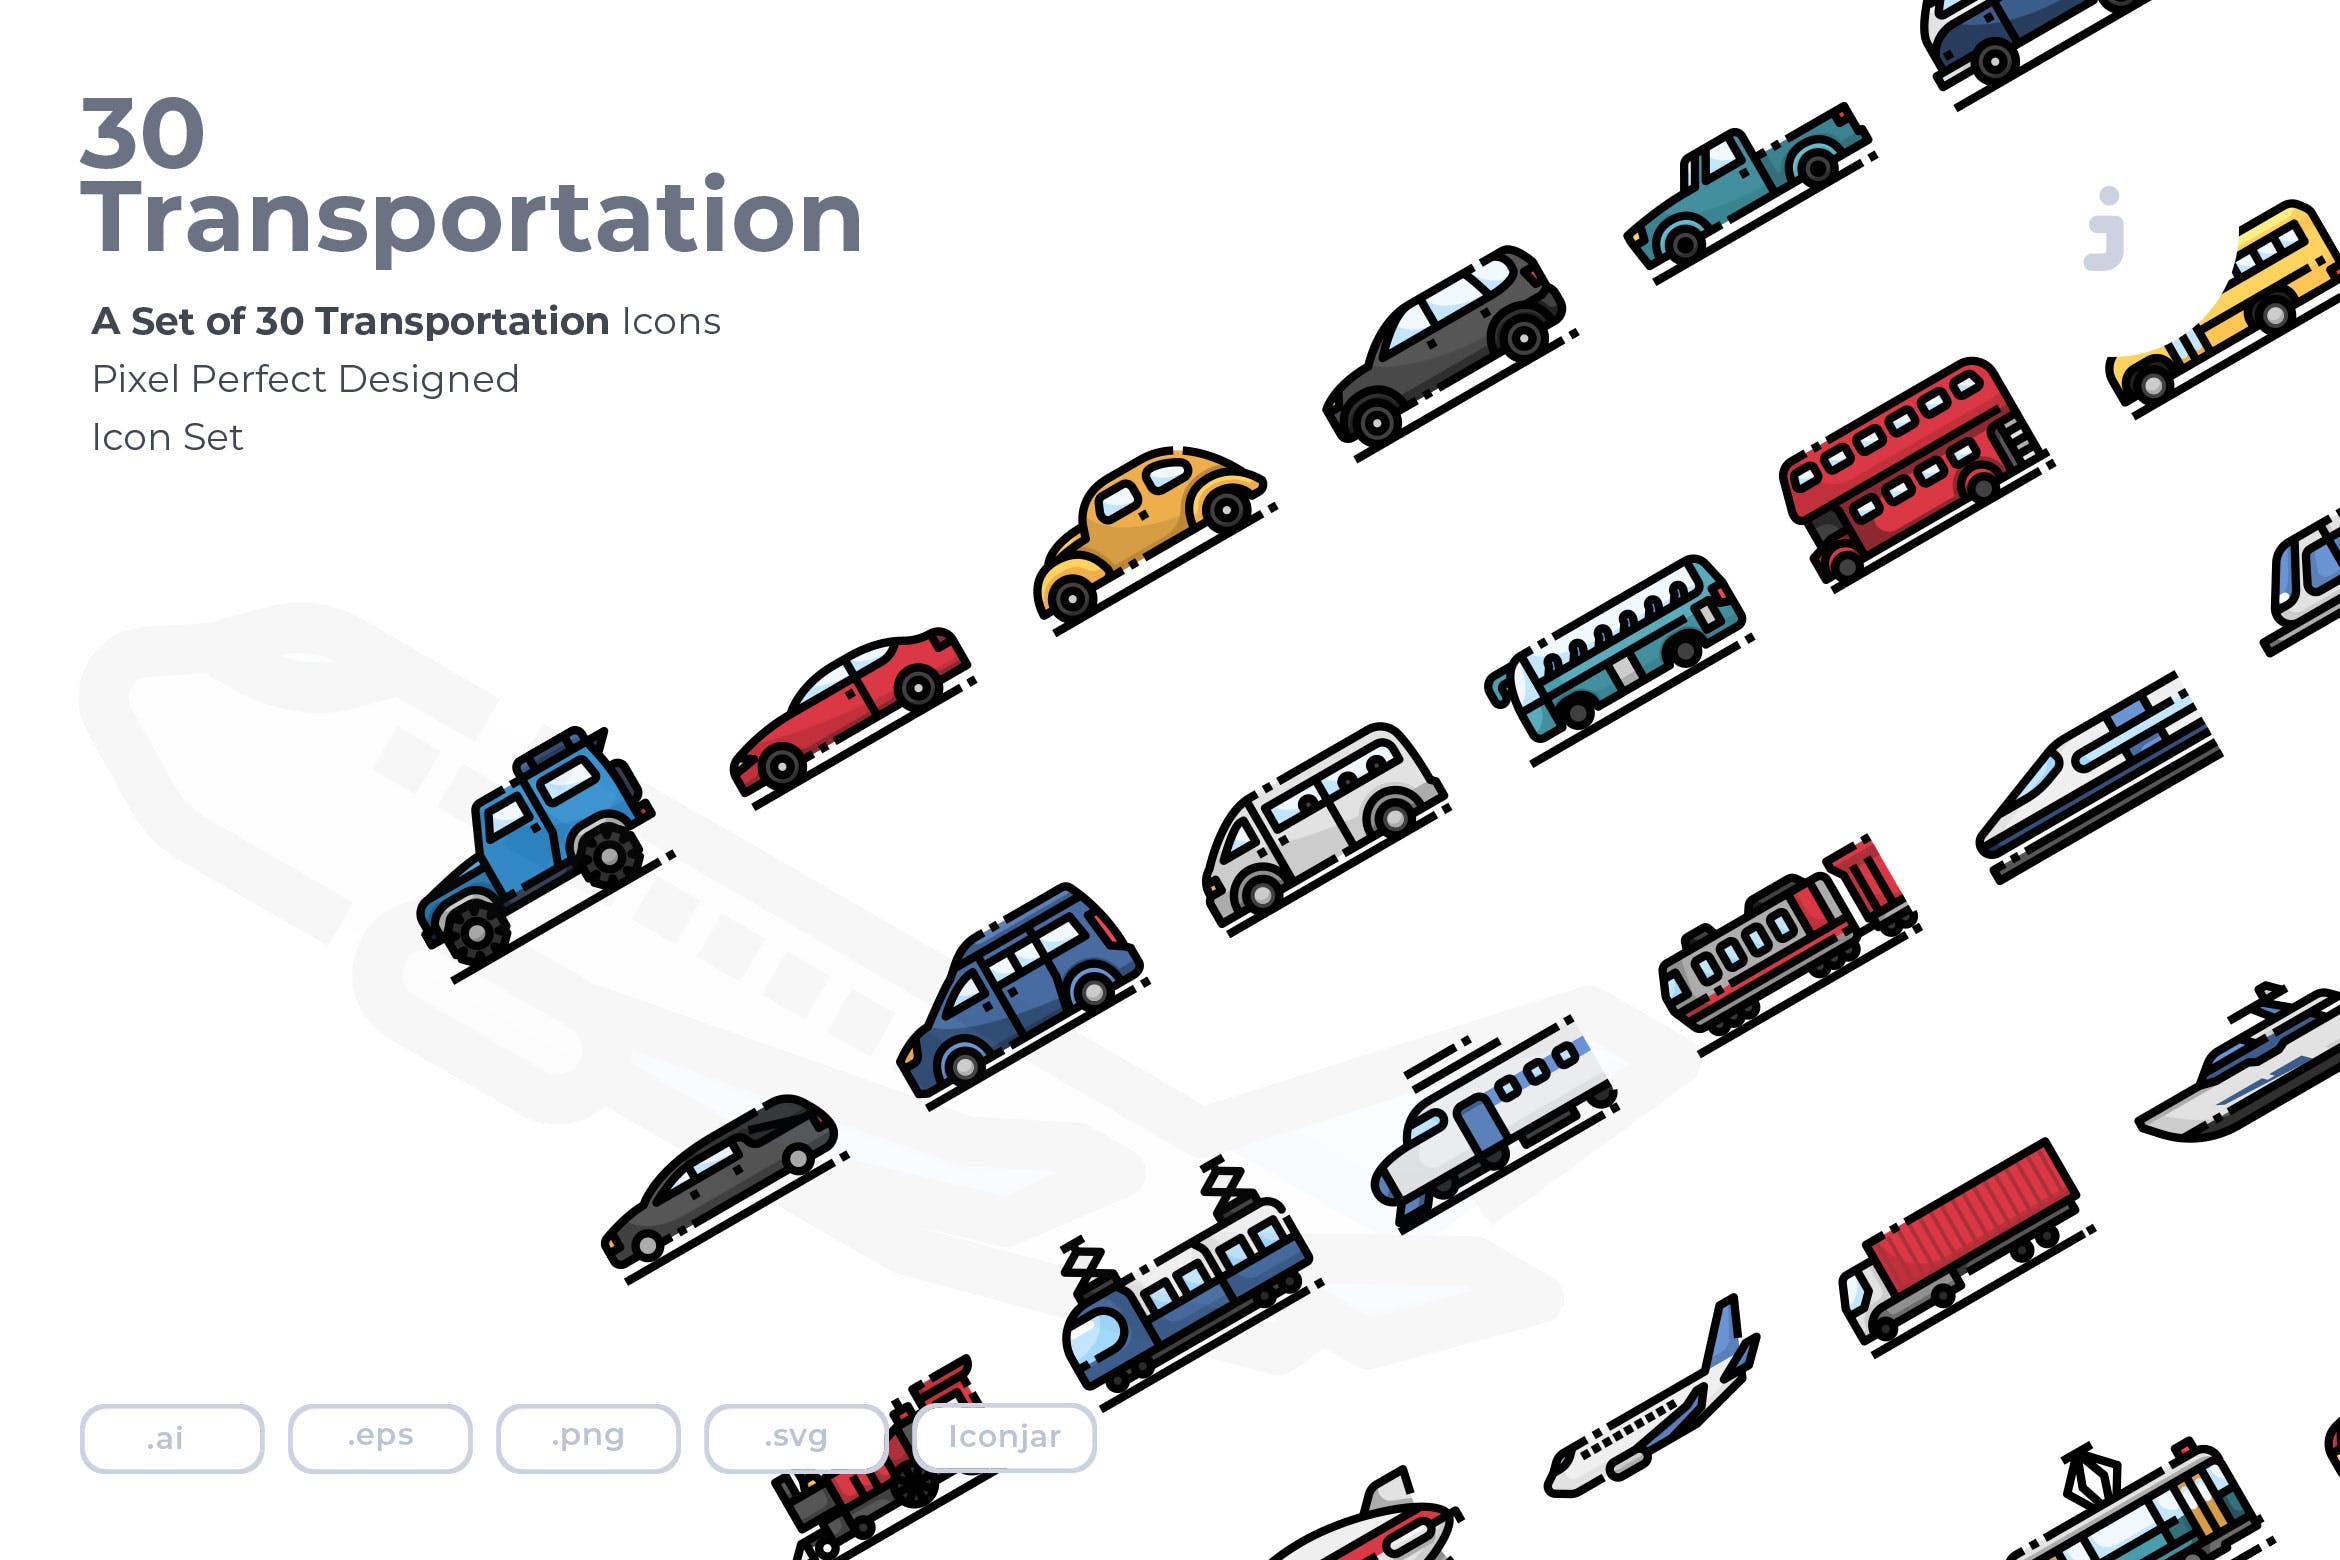 30枚现代交通工具矢量第一素材精选图标 30 Transportation Icons插图